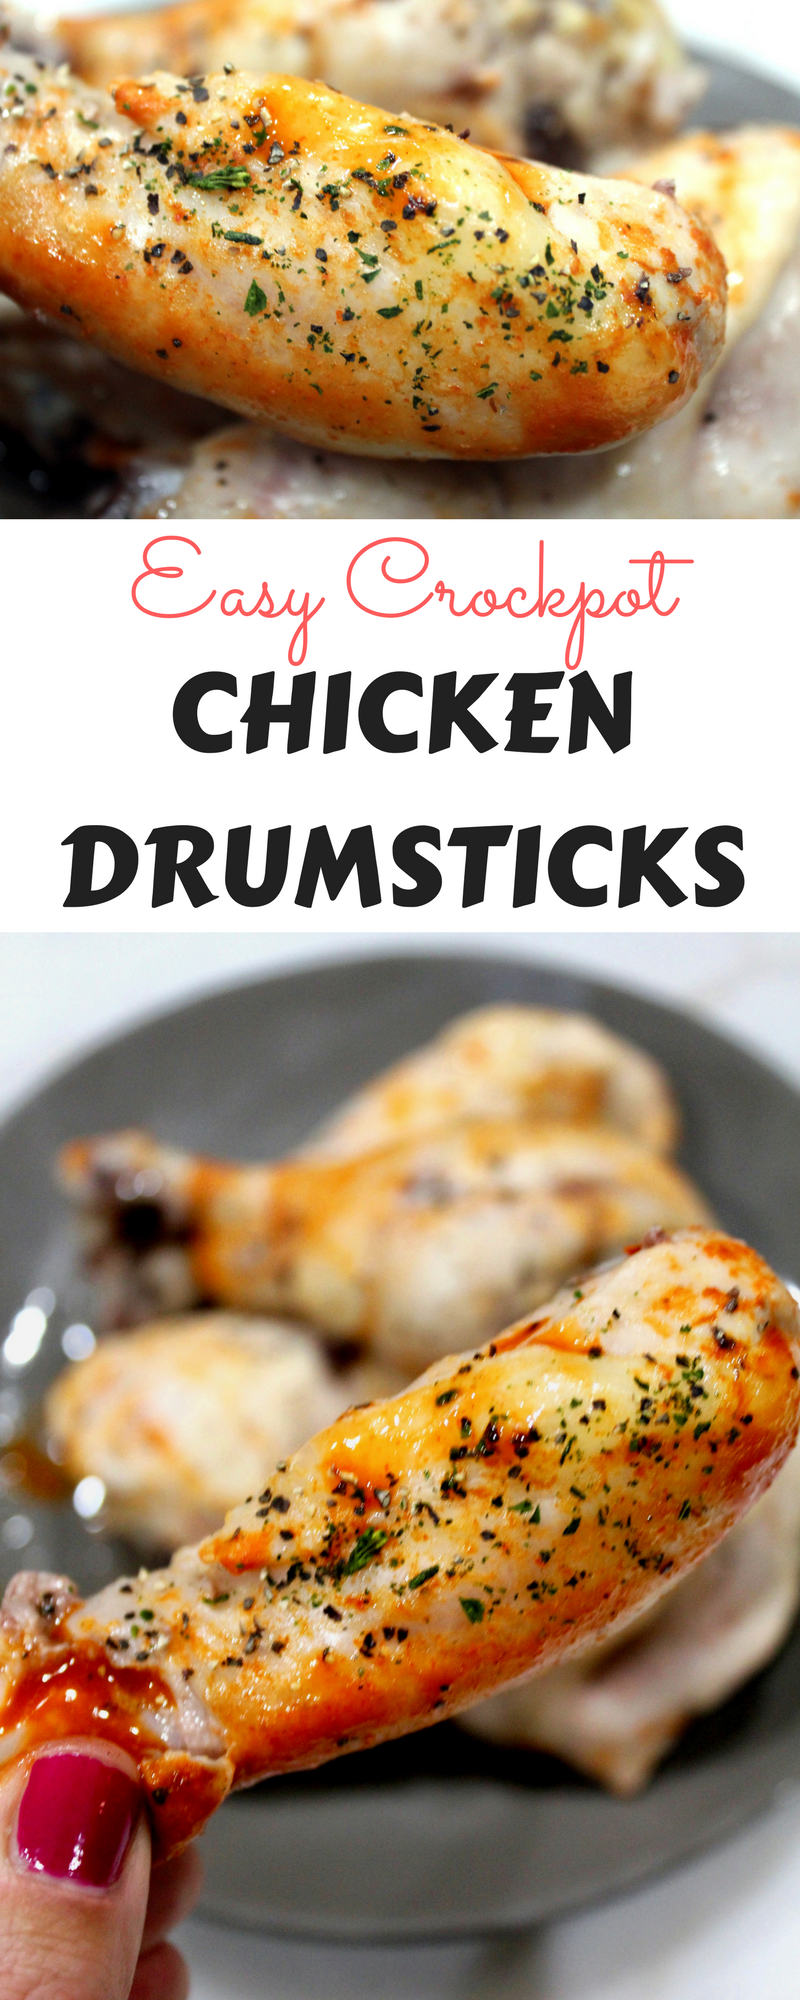 easy crockpot chicken drumsticks